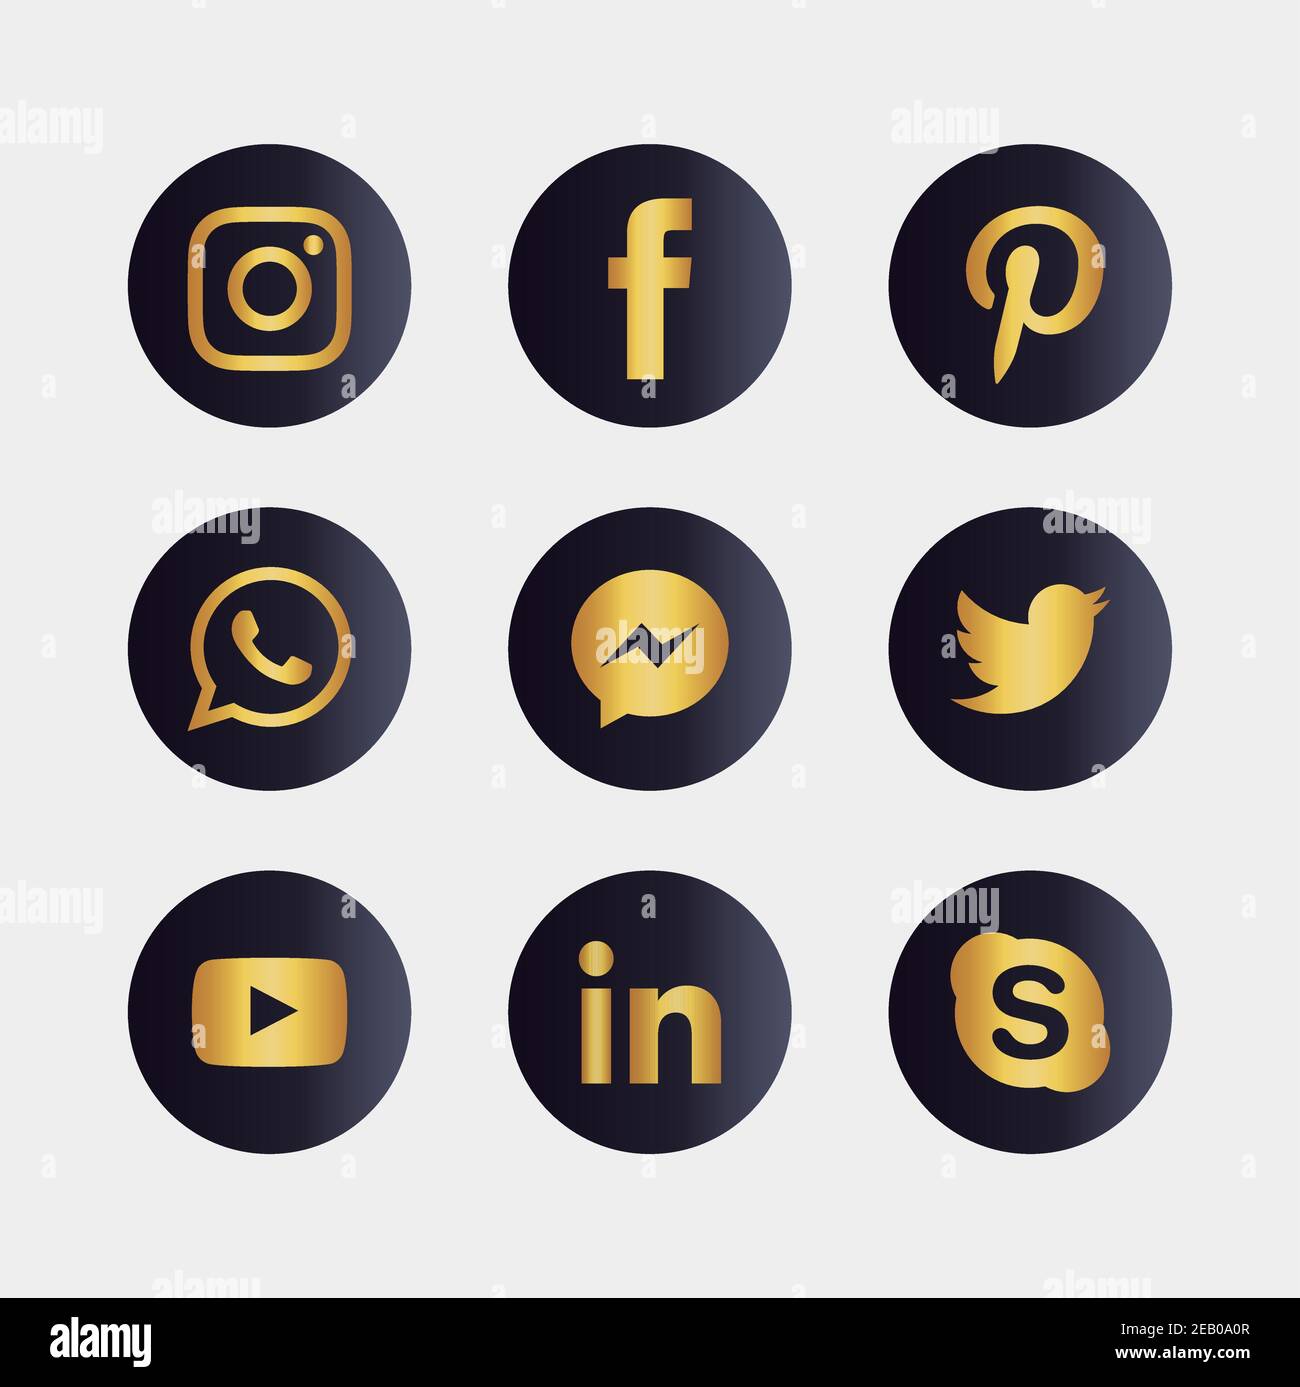 Set of popular social media icons. Instagram, Facebook, Twitter, Youtube, WhatsApp, LinkedIn, Pinterest Skype and Messenger icons. Stock Vector